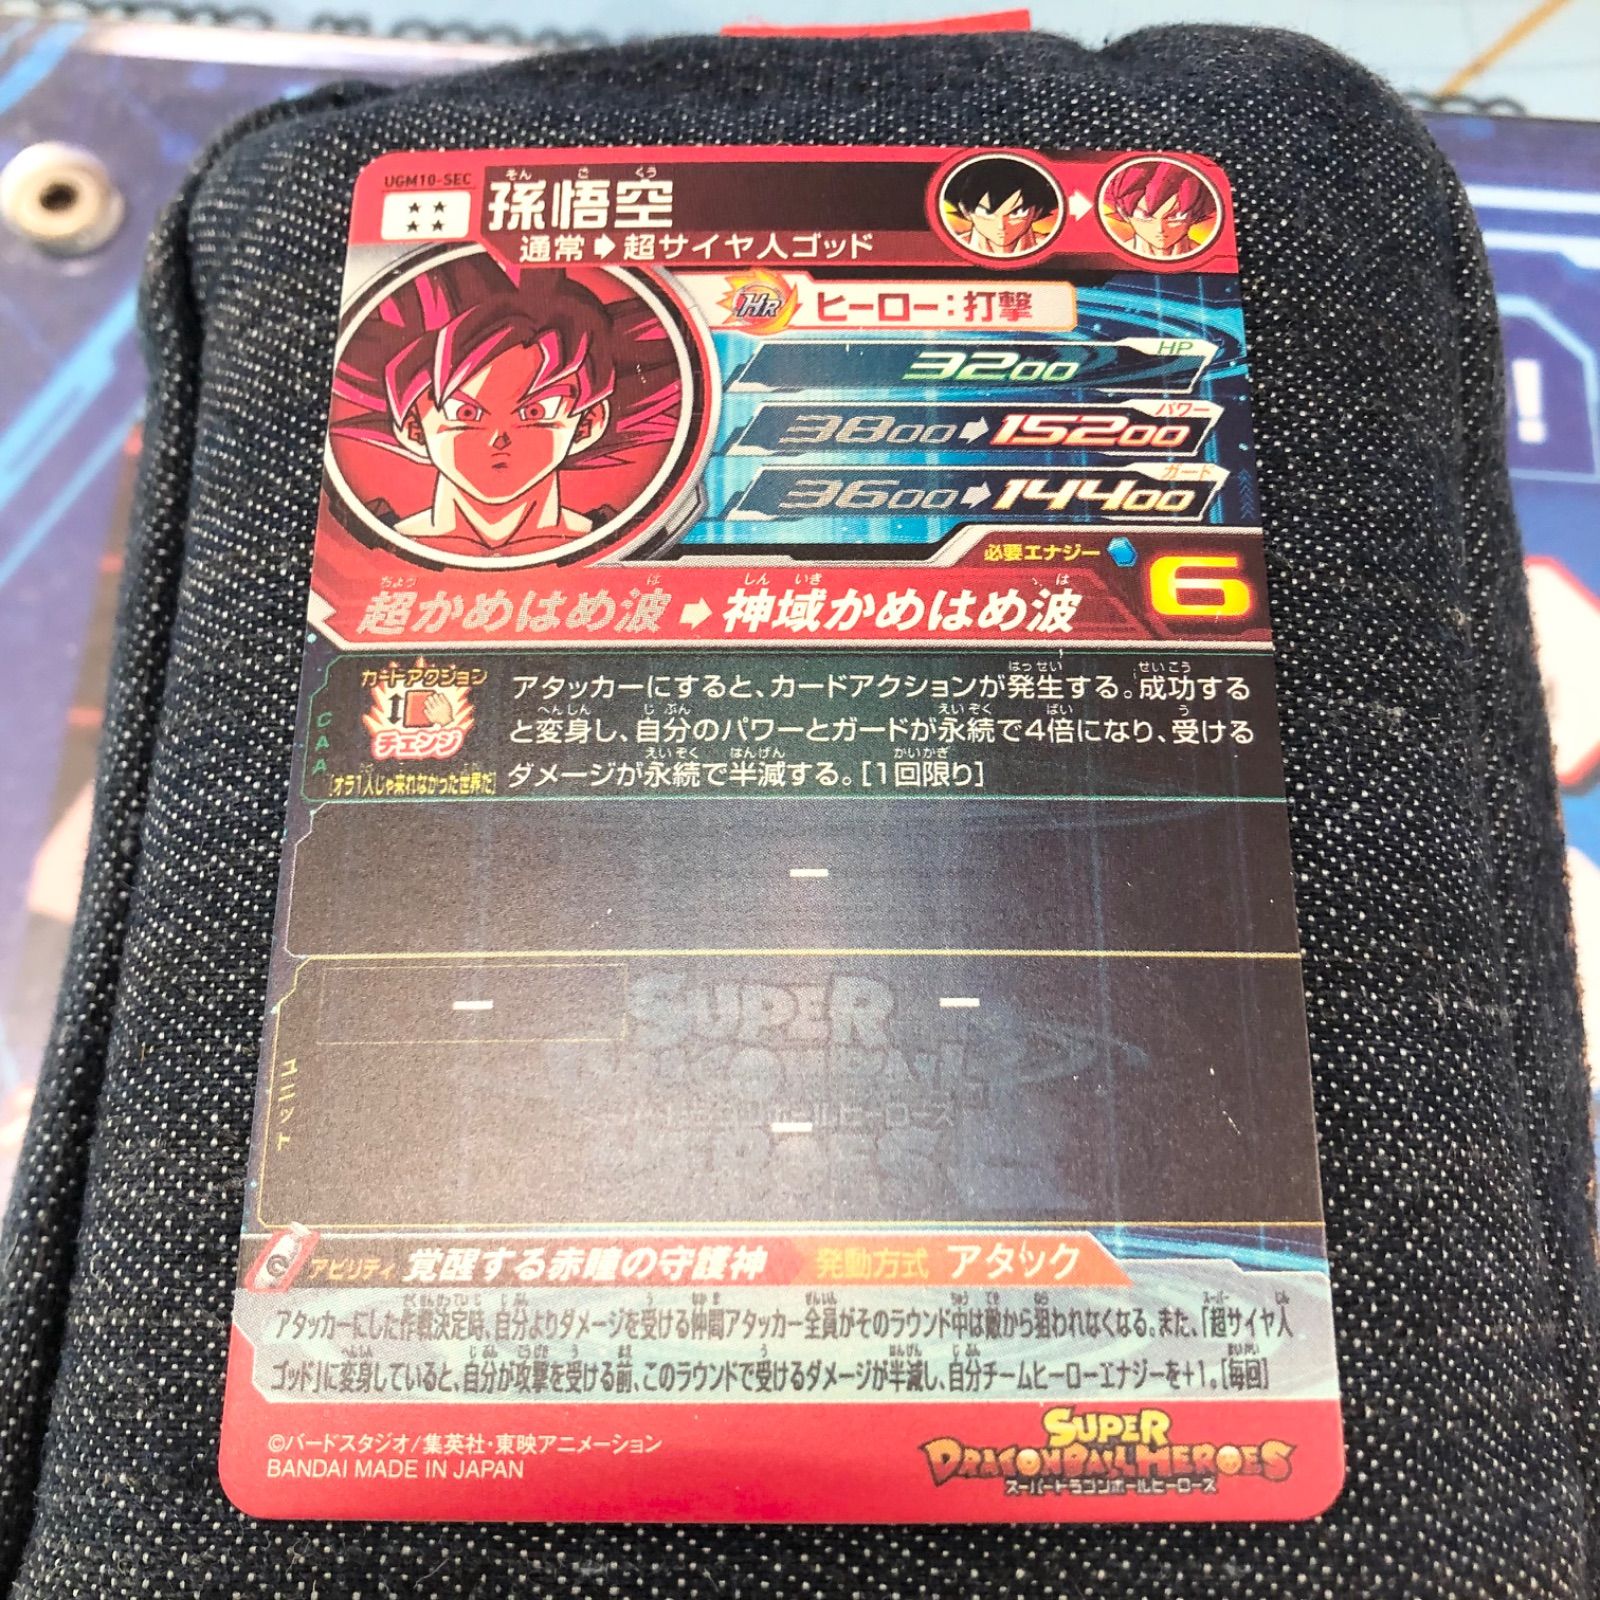 ugm10-sec UGM10-SEC孫悟空 ドラゴンボールヒーローズ カード専門店(無言OK) メルカリ